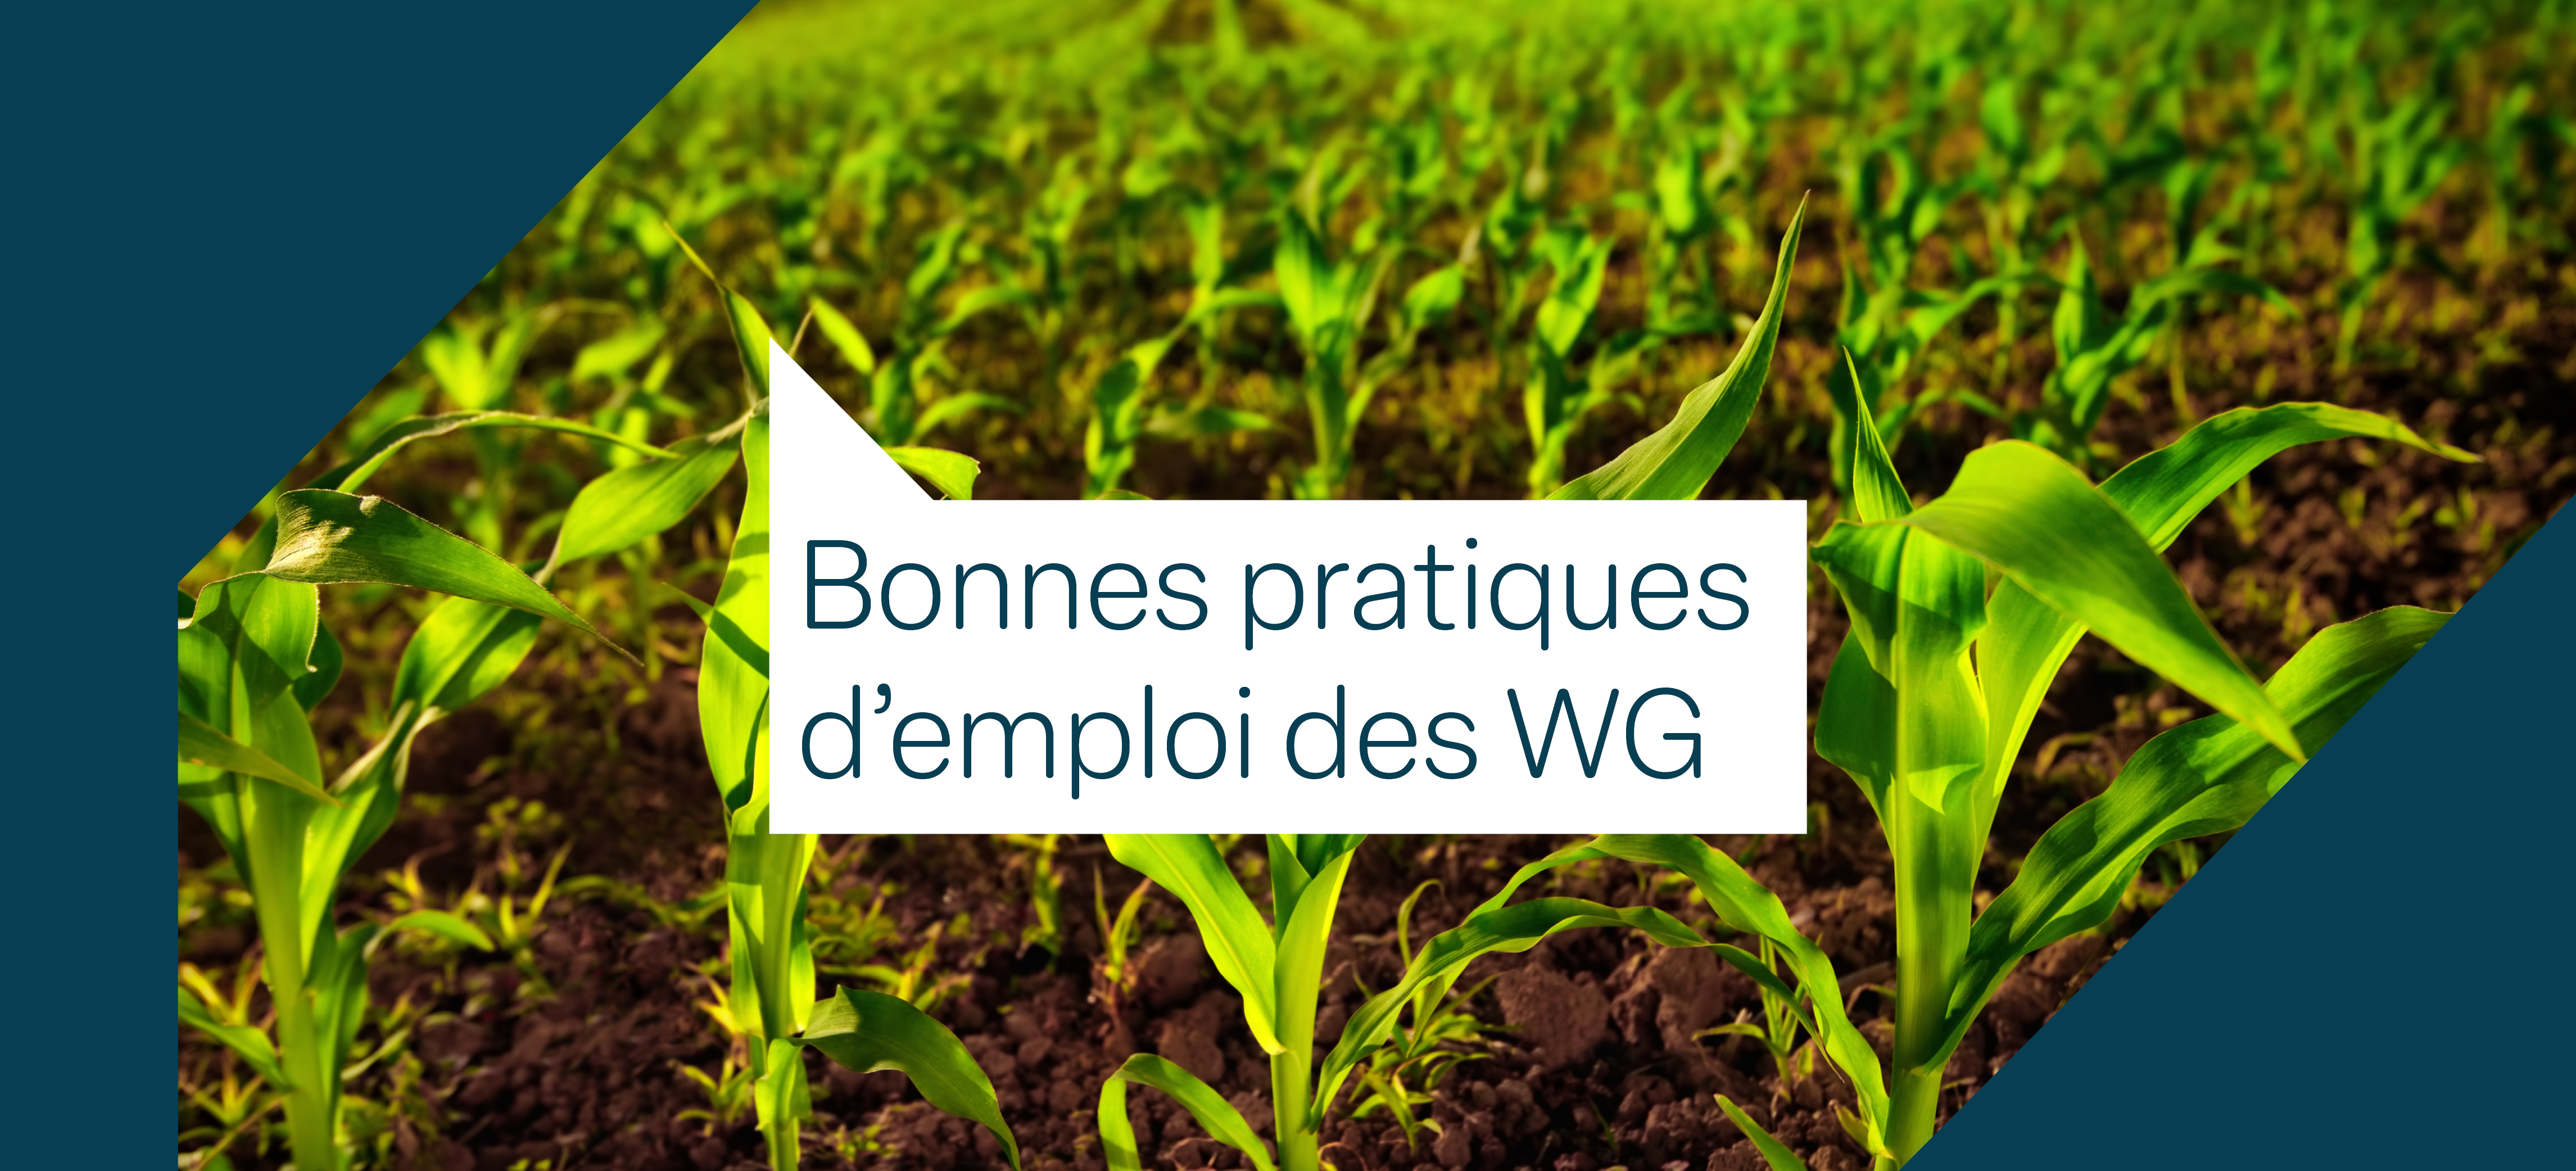 Un montage photo de maïs avec le texte "Bonnes pratiques d'emploi des WG"